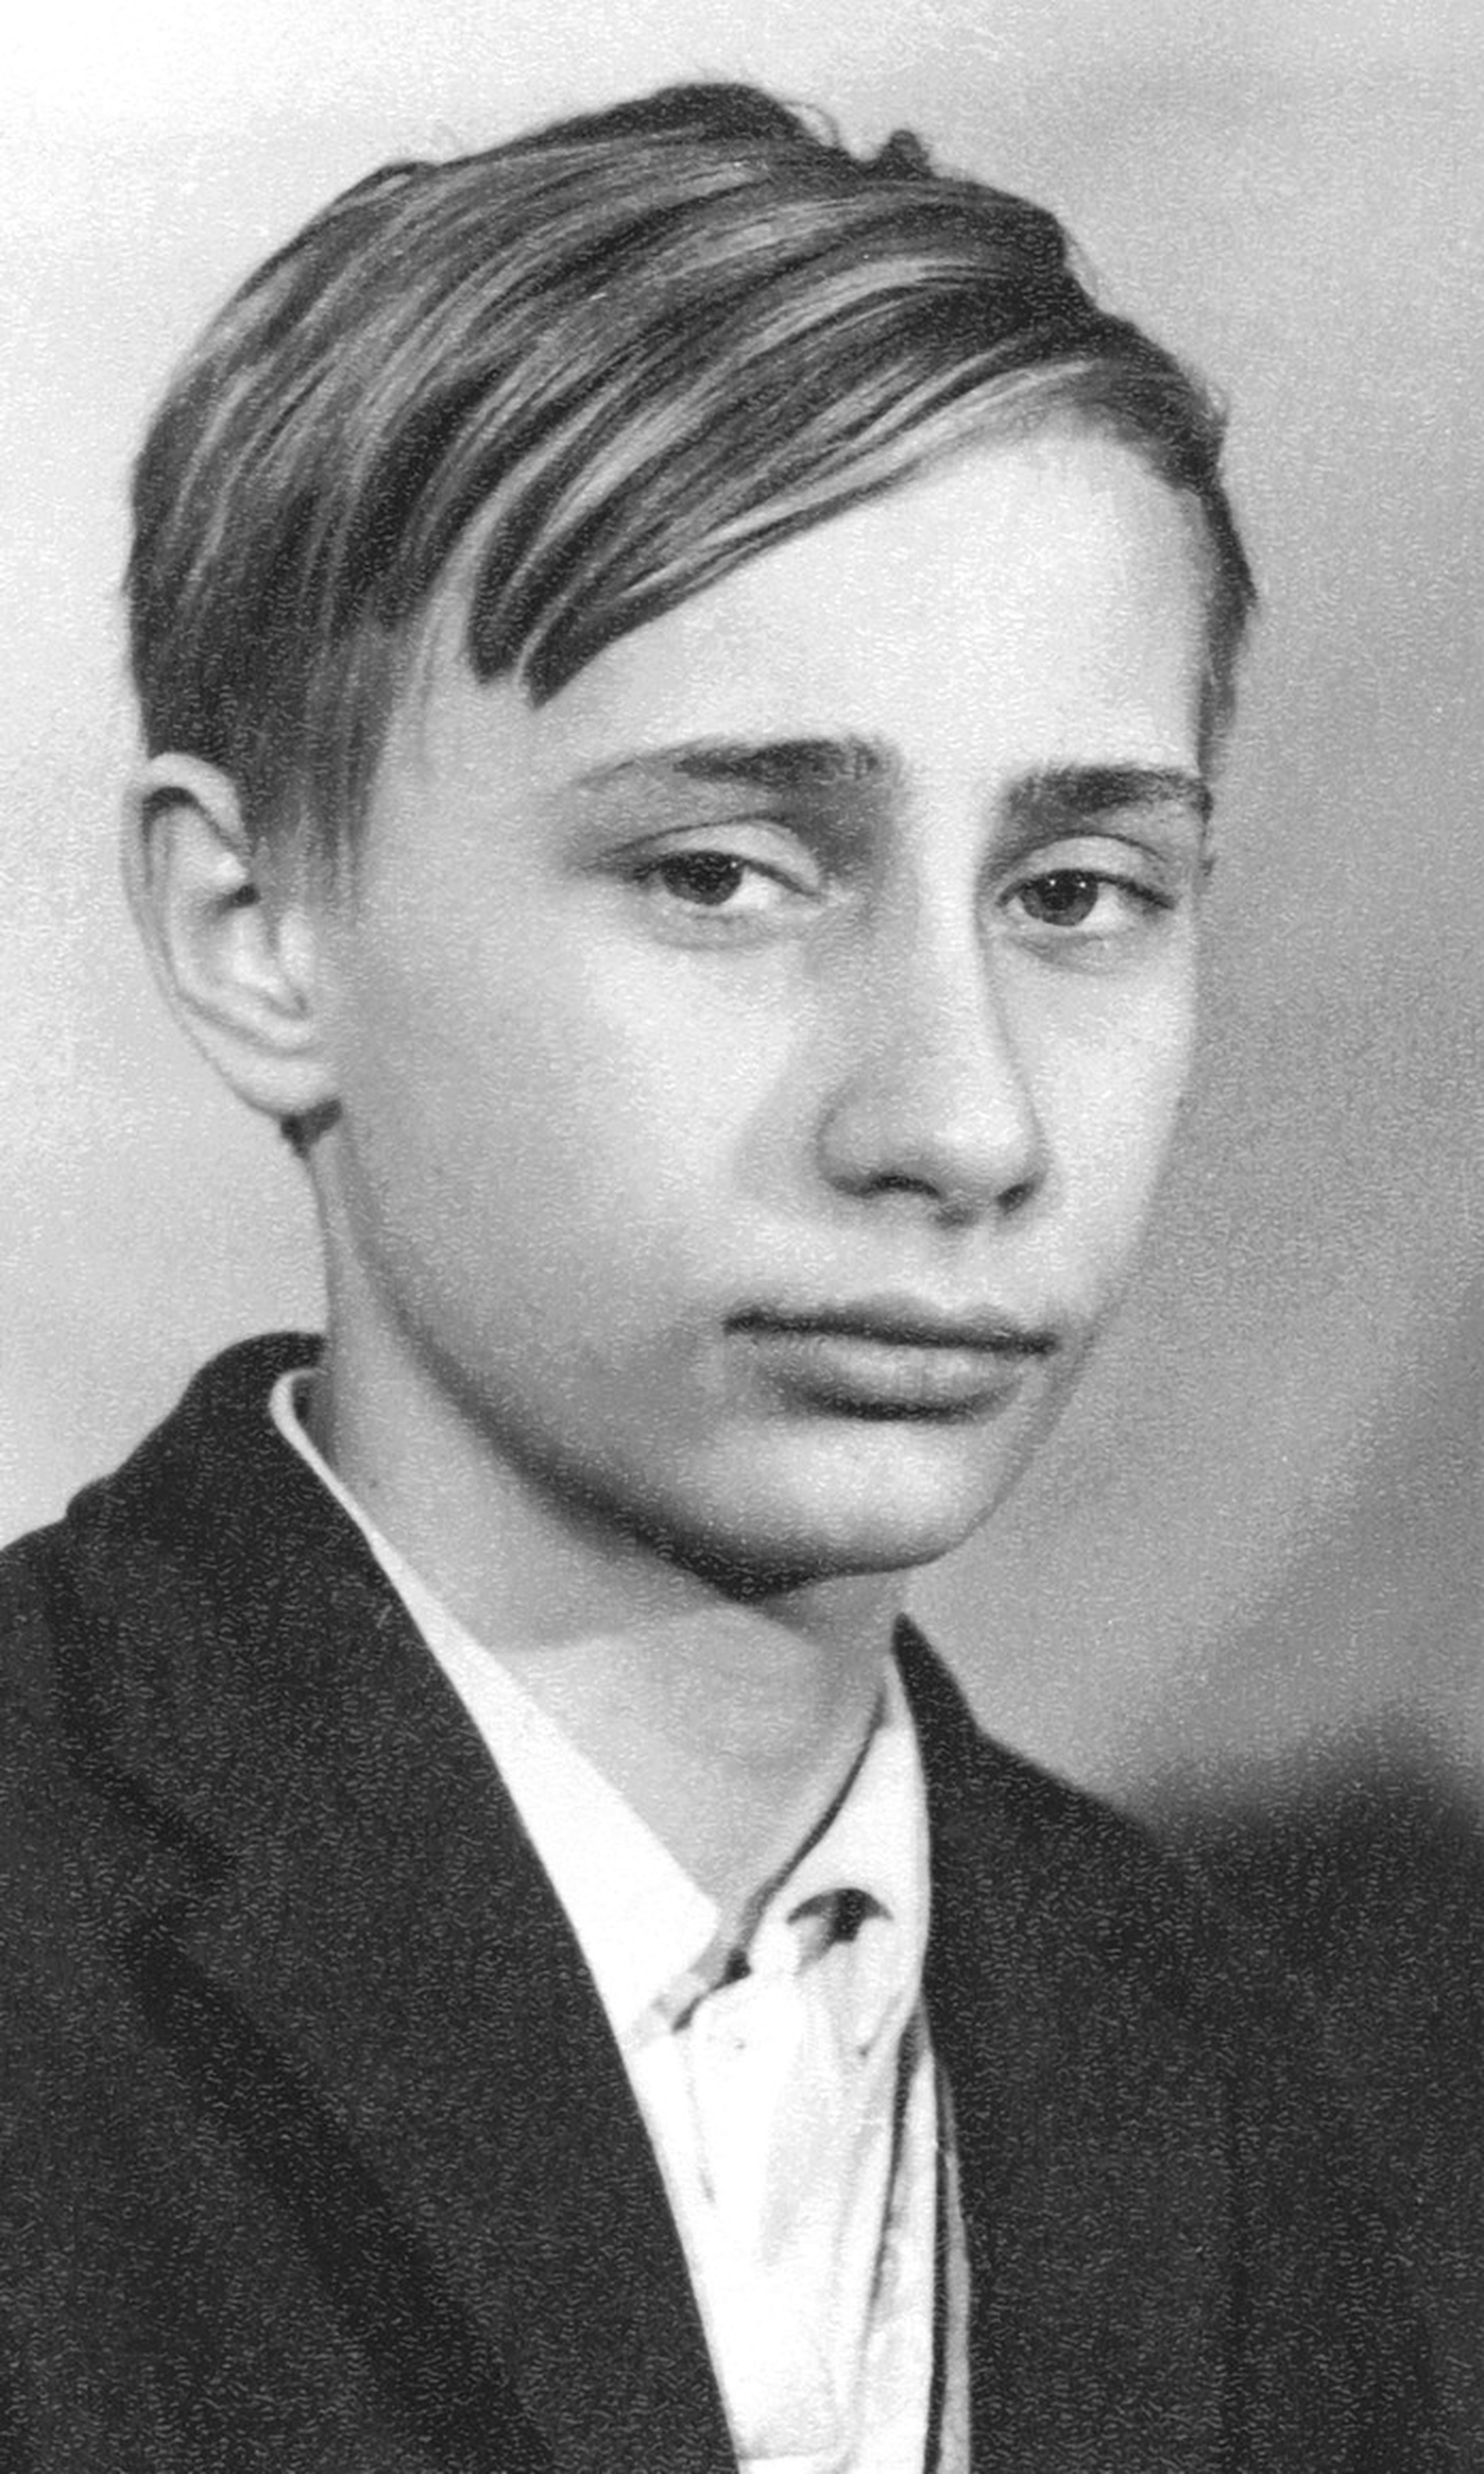 El presidente ruso, Vladímir Putin, cuando era un adolescente.